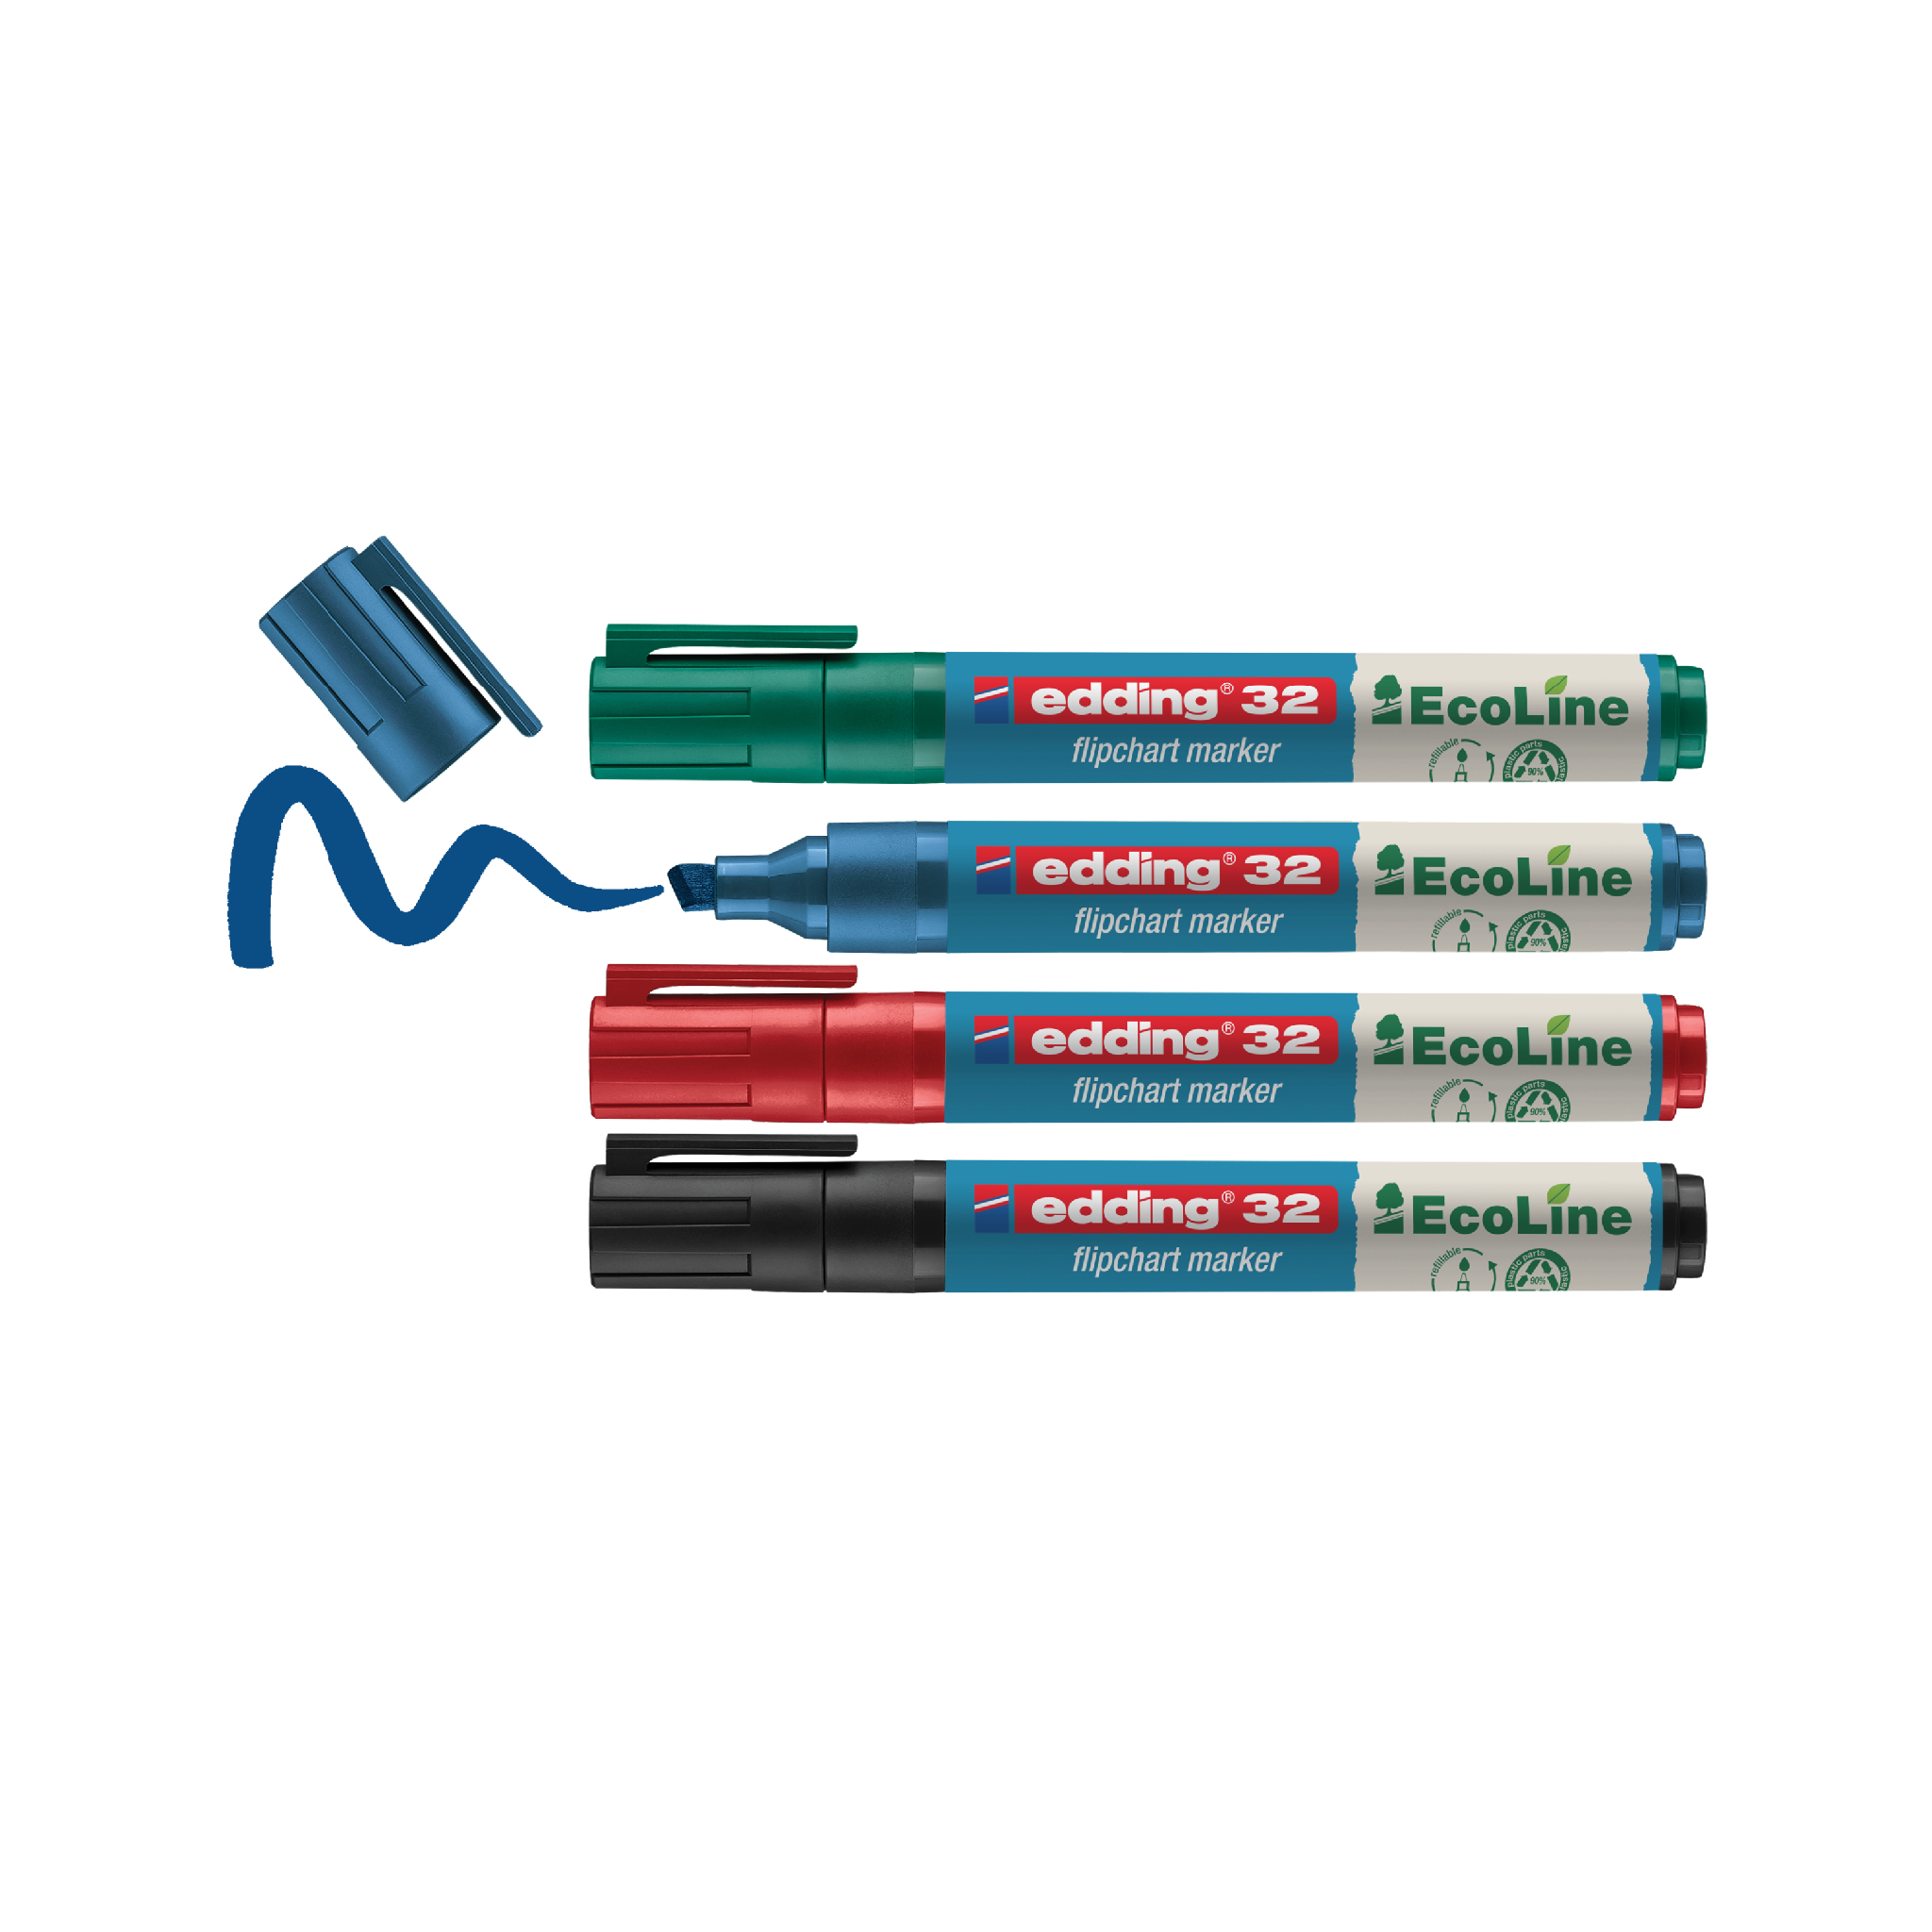 Eine Sammlung von blauen und roten edding 32 EcoLine Flipchartmarkern 4er-Sets, die parallel angeordnet sind, wobei einer der blauen Stifte offen ist.